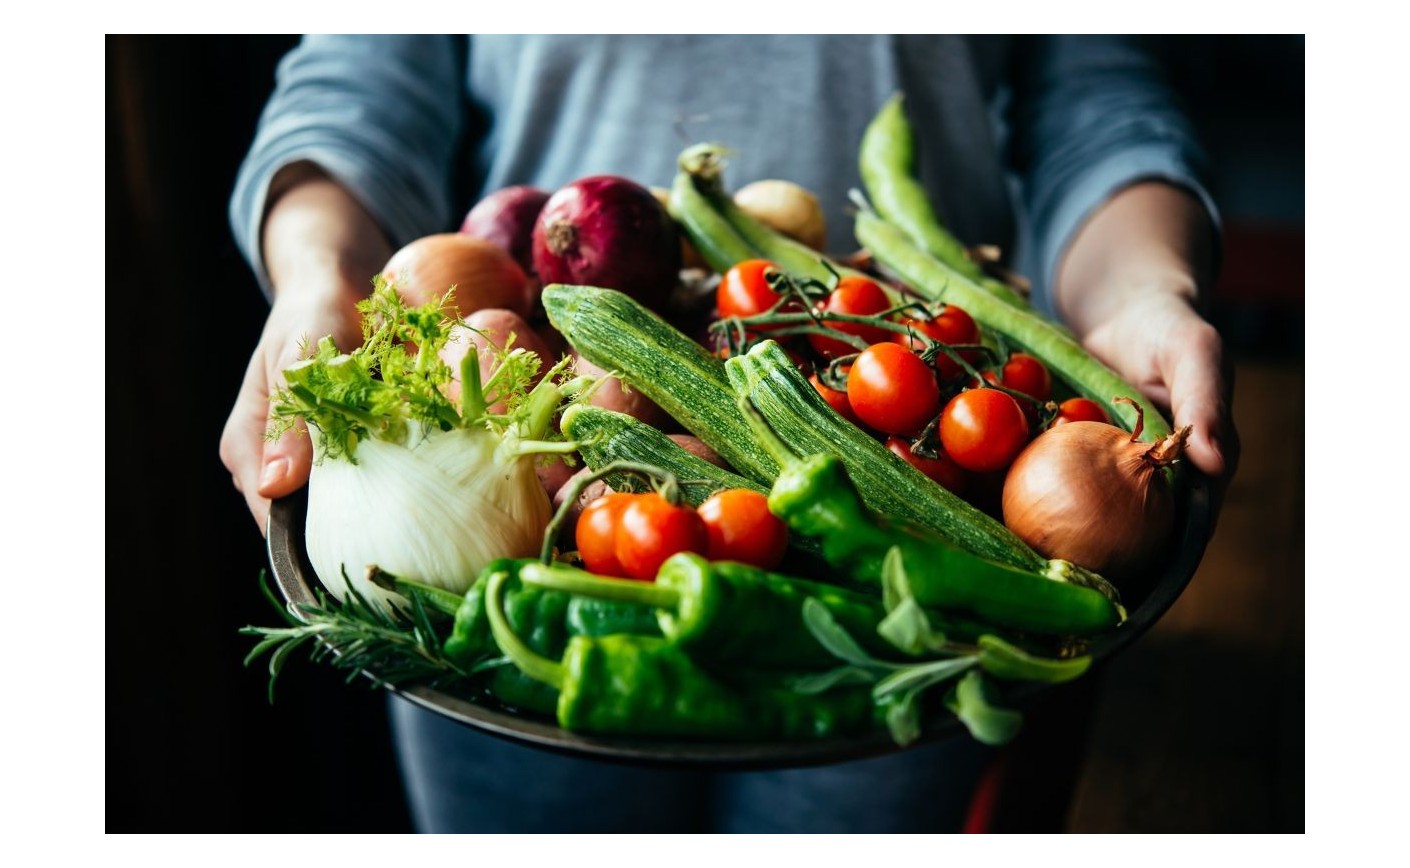 Seleccionamos las verduras y cuidamos su preparación para mantener su aroma, sabor y textura.